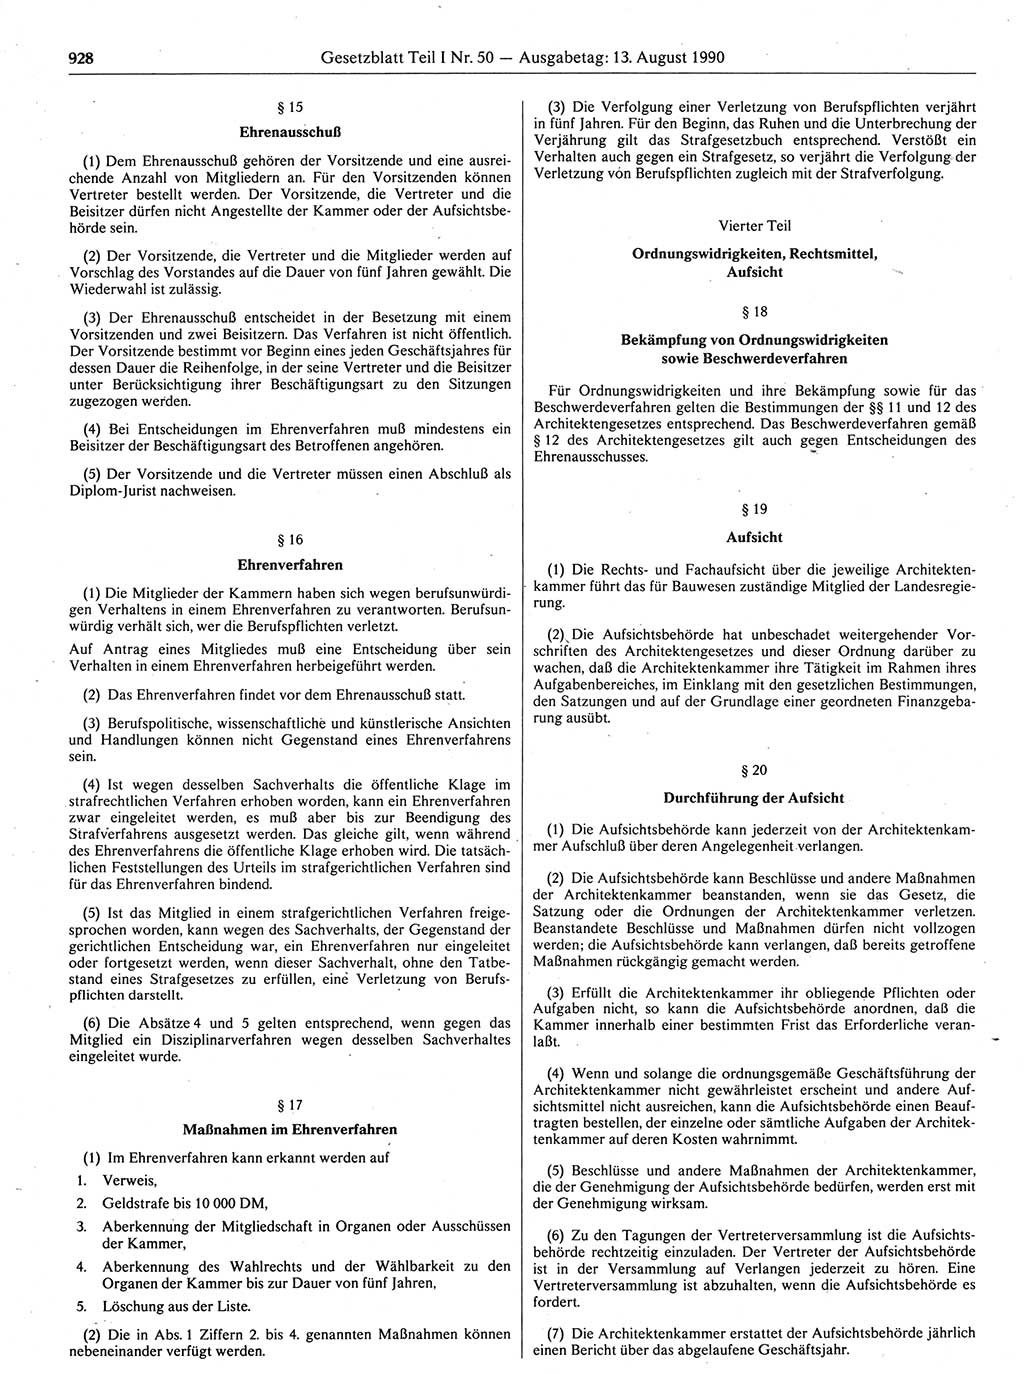 Gesetzblatt (GBl.) der Deutschen Demokratischen Republik (DDR) Teil Ⅰ 1990, Seite 928 (GBl. DDR Ⅰ 1990, S. 928)